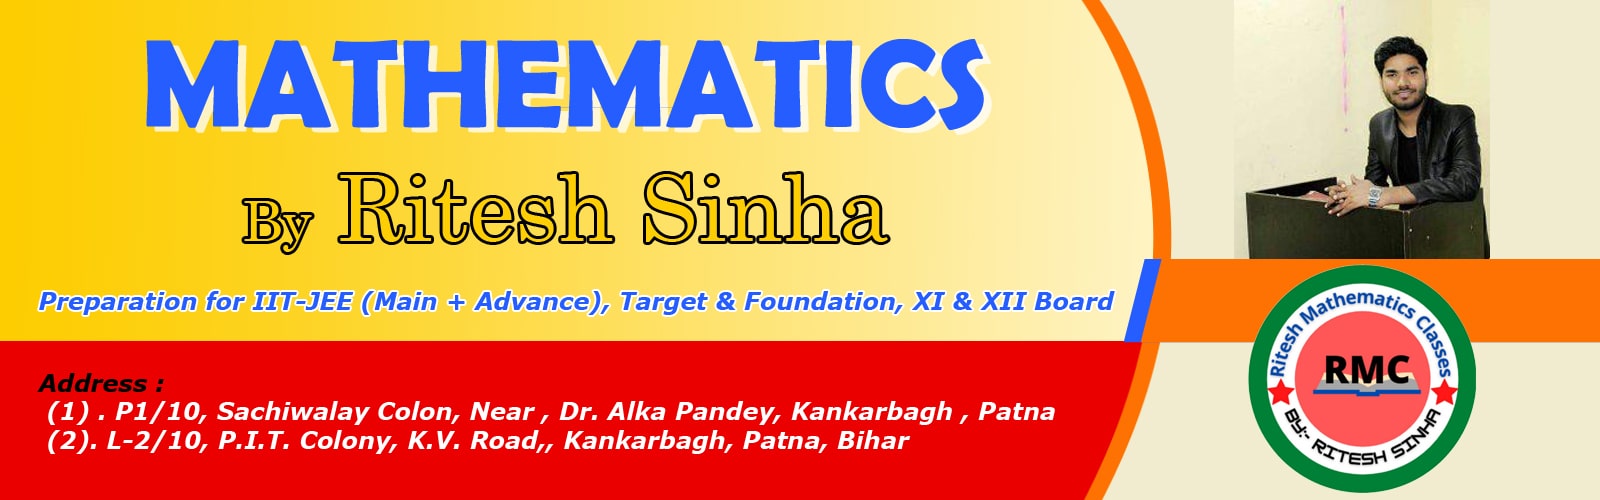 Ritesh Mathematics Classes